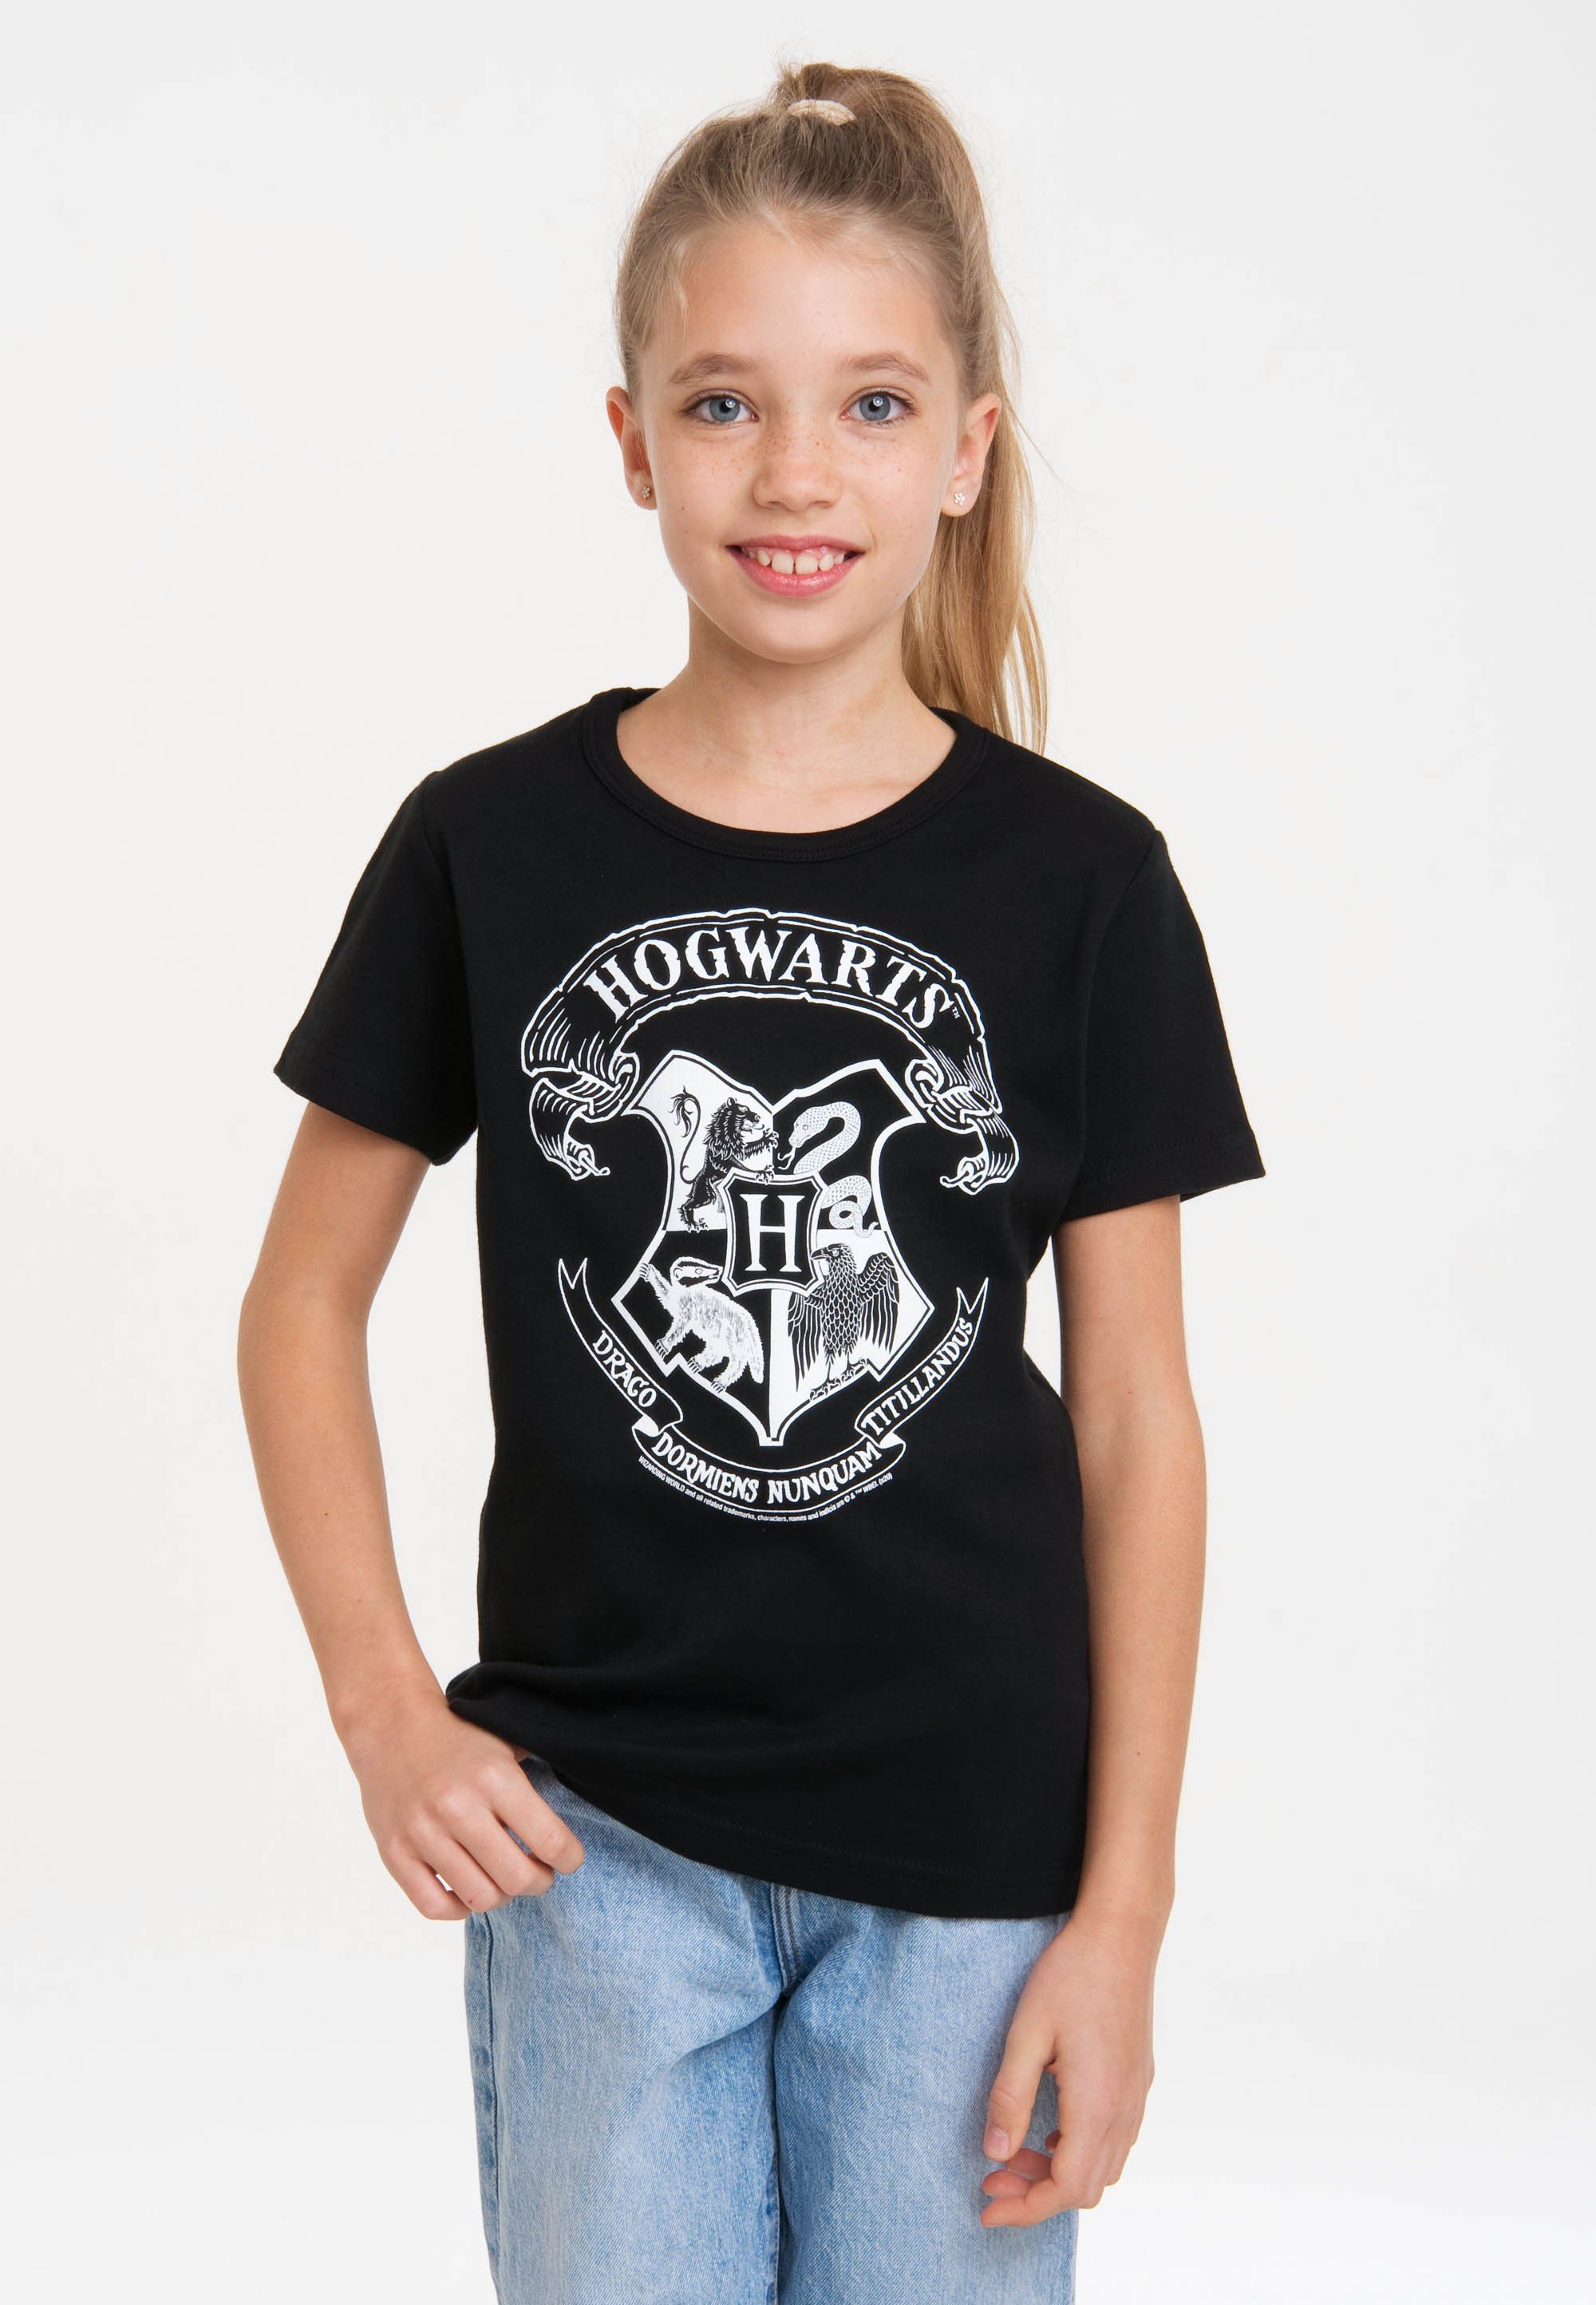 LOGOSHIRT T-Shirt Harry Potter Logo mit Originaldesign Hogwarts (Weiß) lizenziertem 